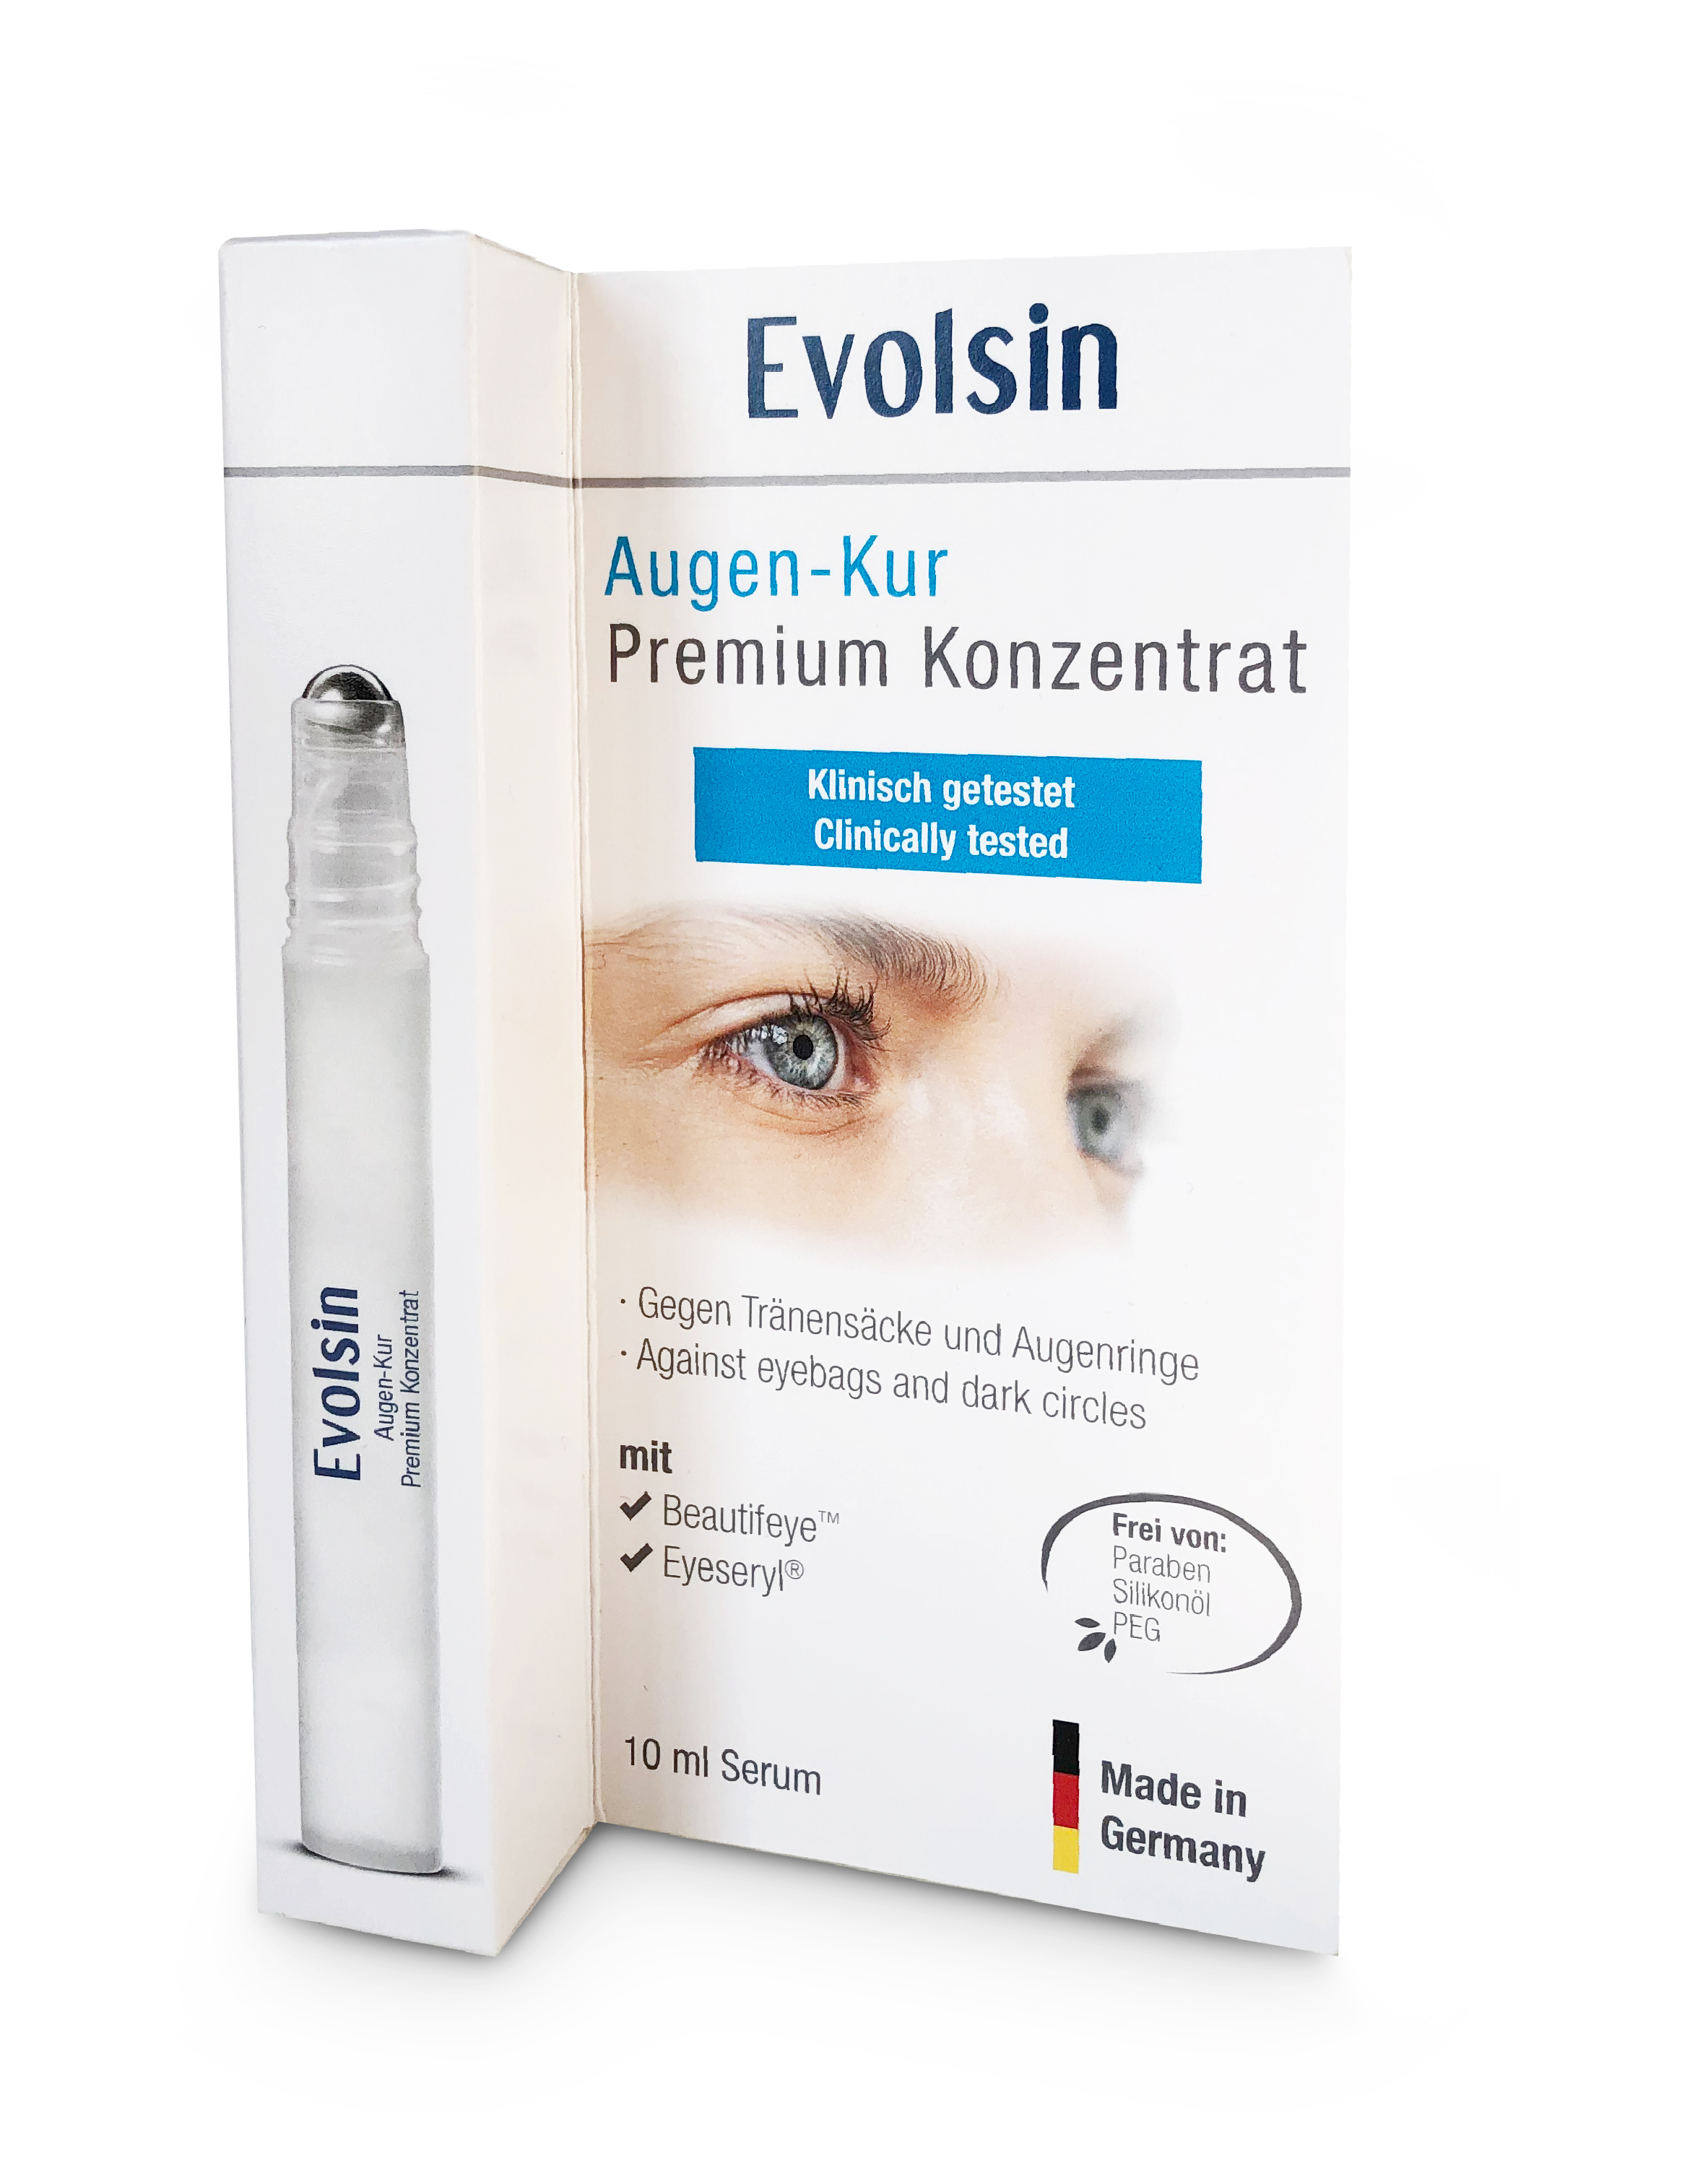 Evolsin Augen-Kur Premium Konzentrat